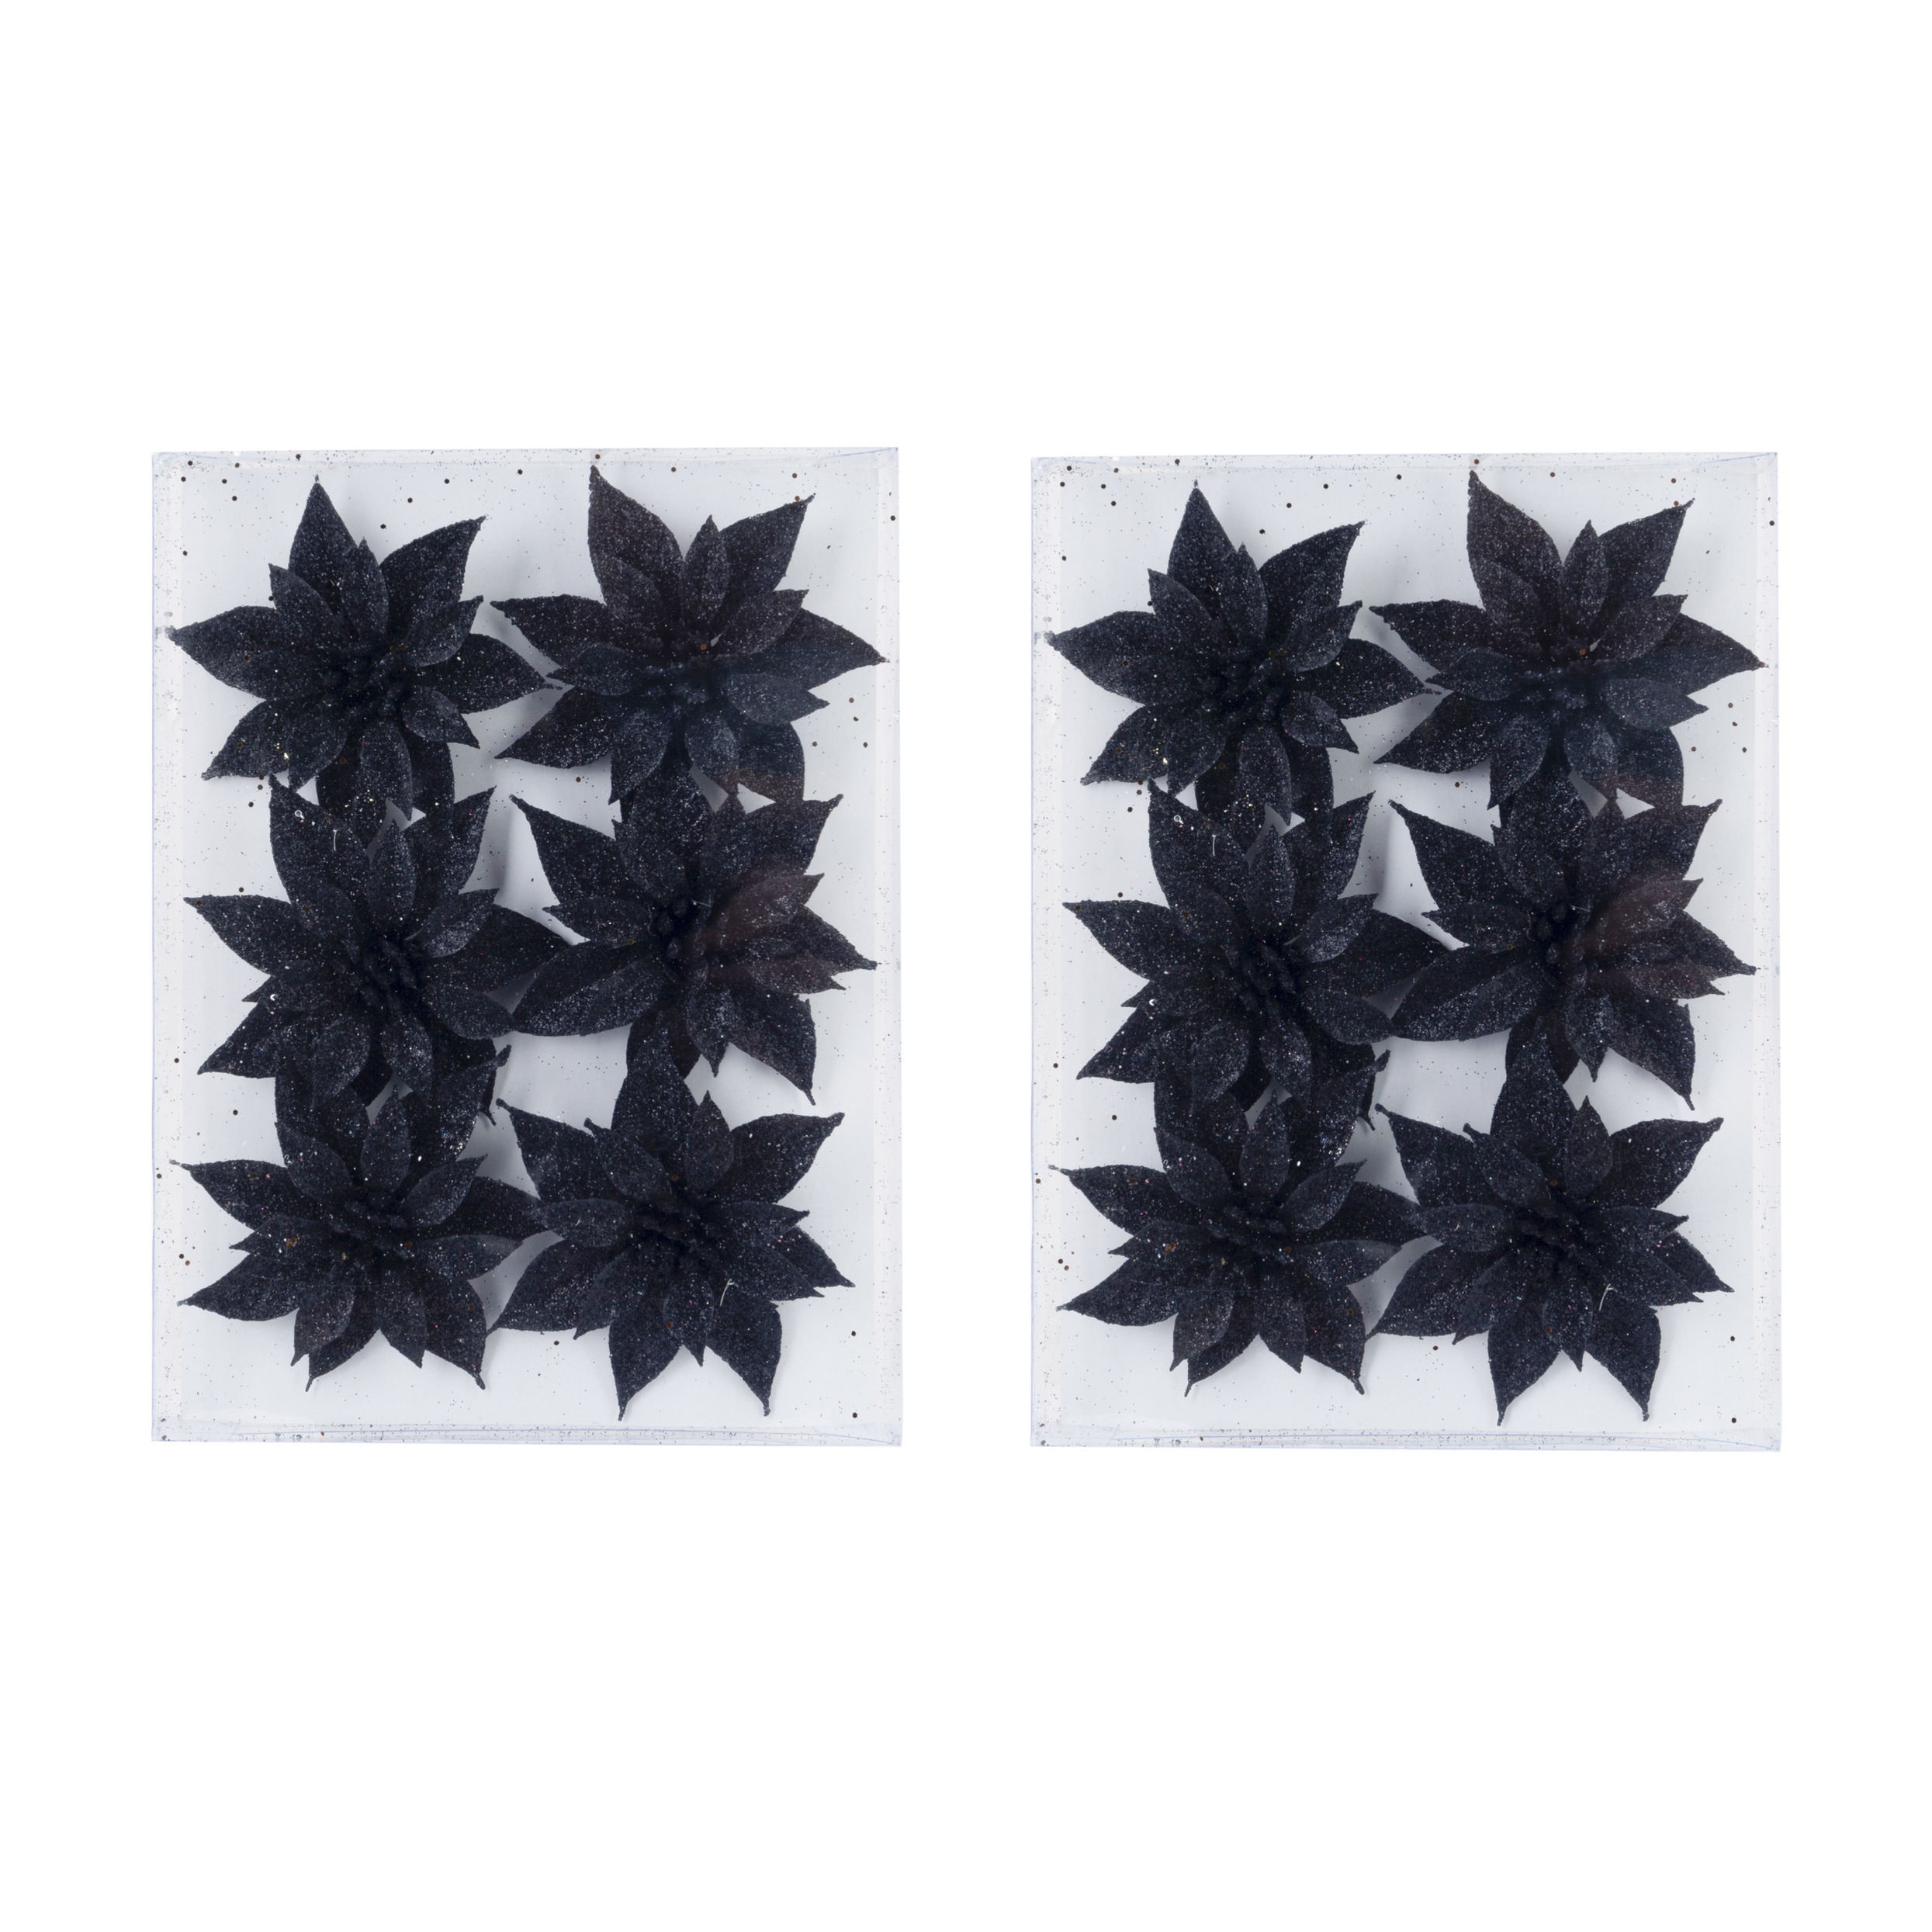 24x stuks decoratie bloemen rozen zwart glitter op ijzerdraad 8 cm